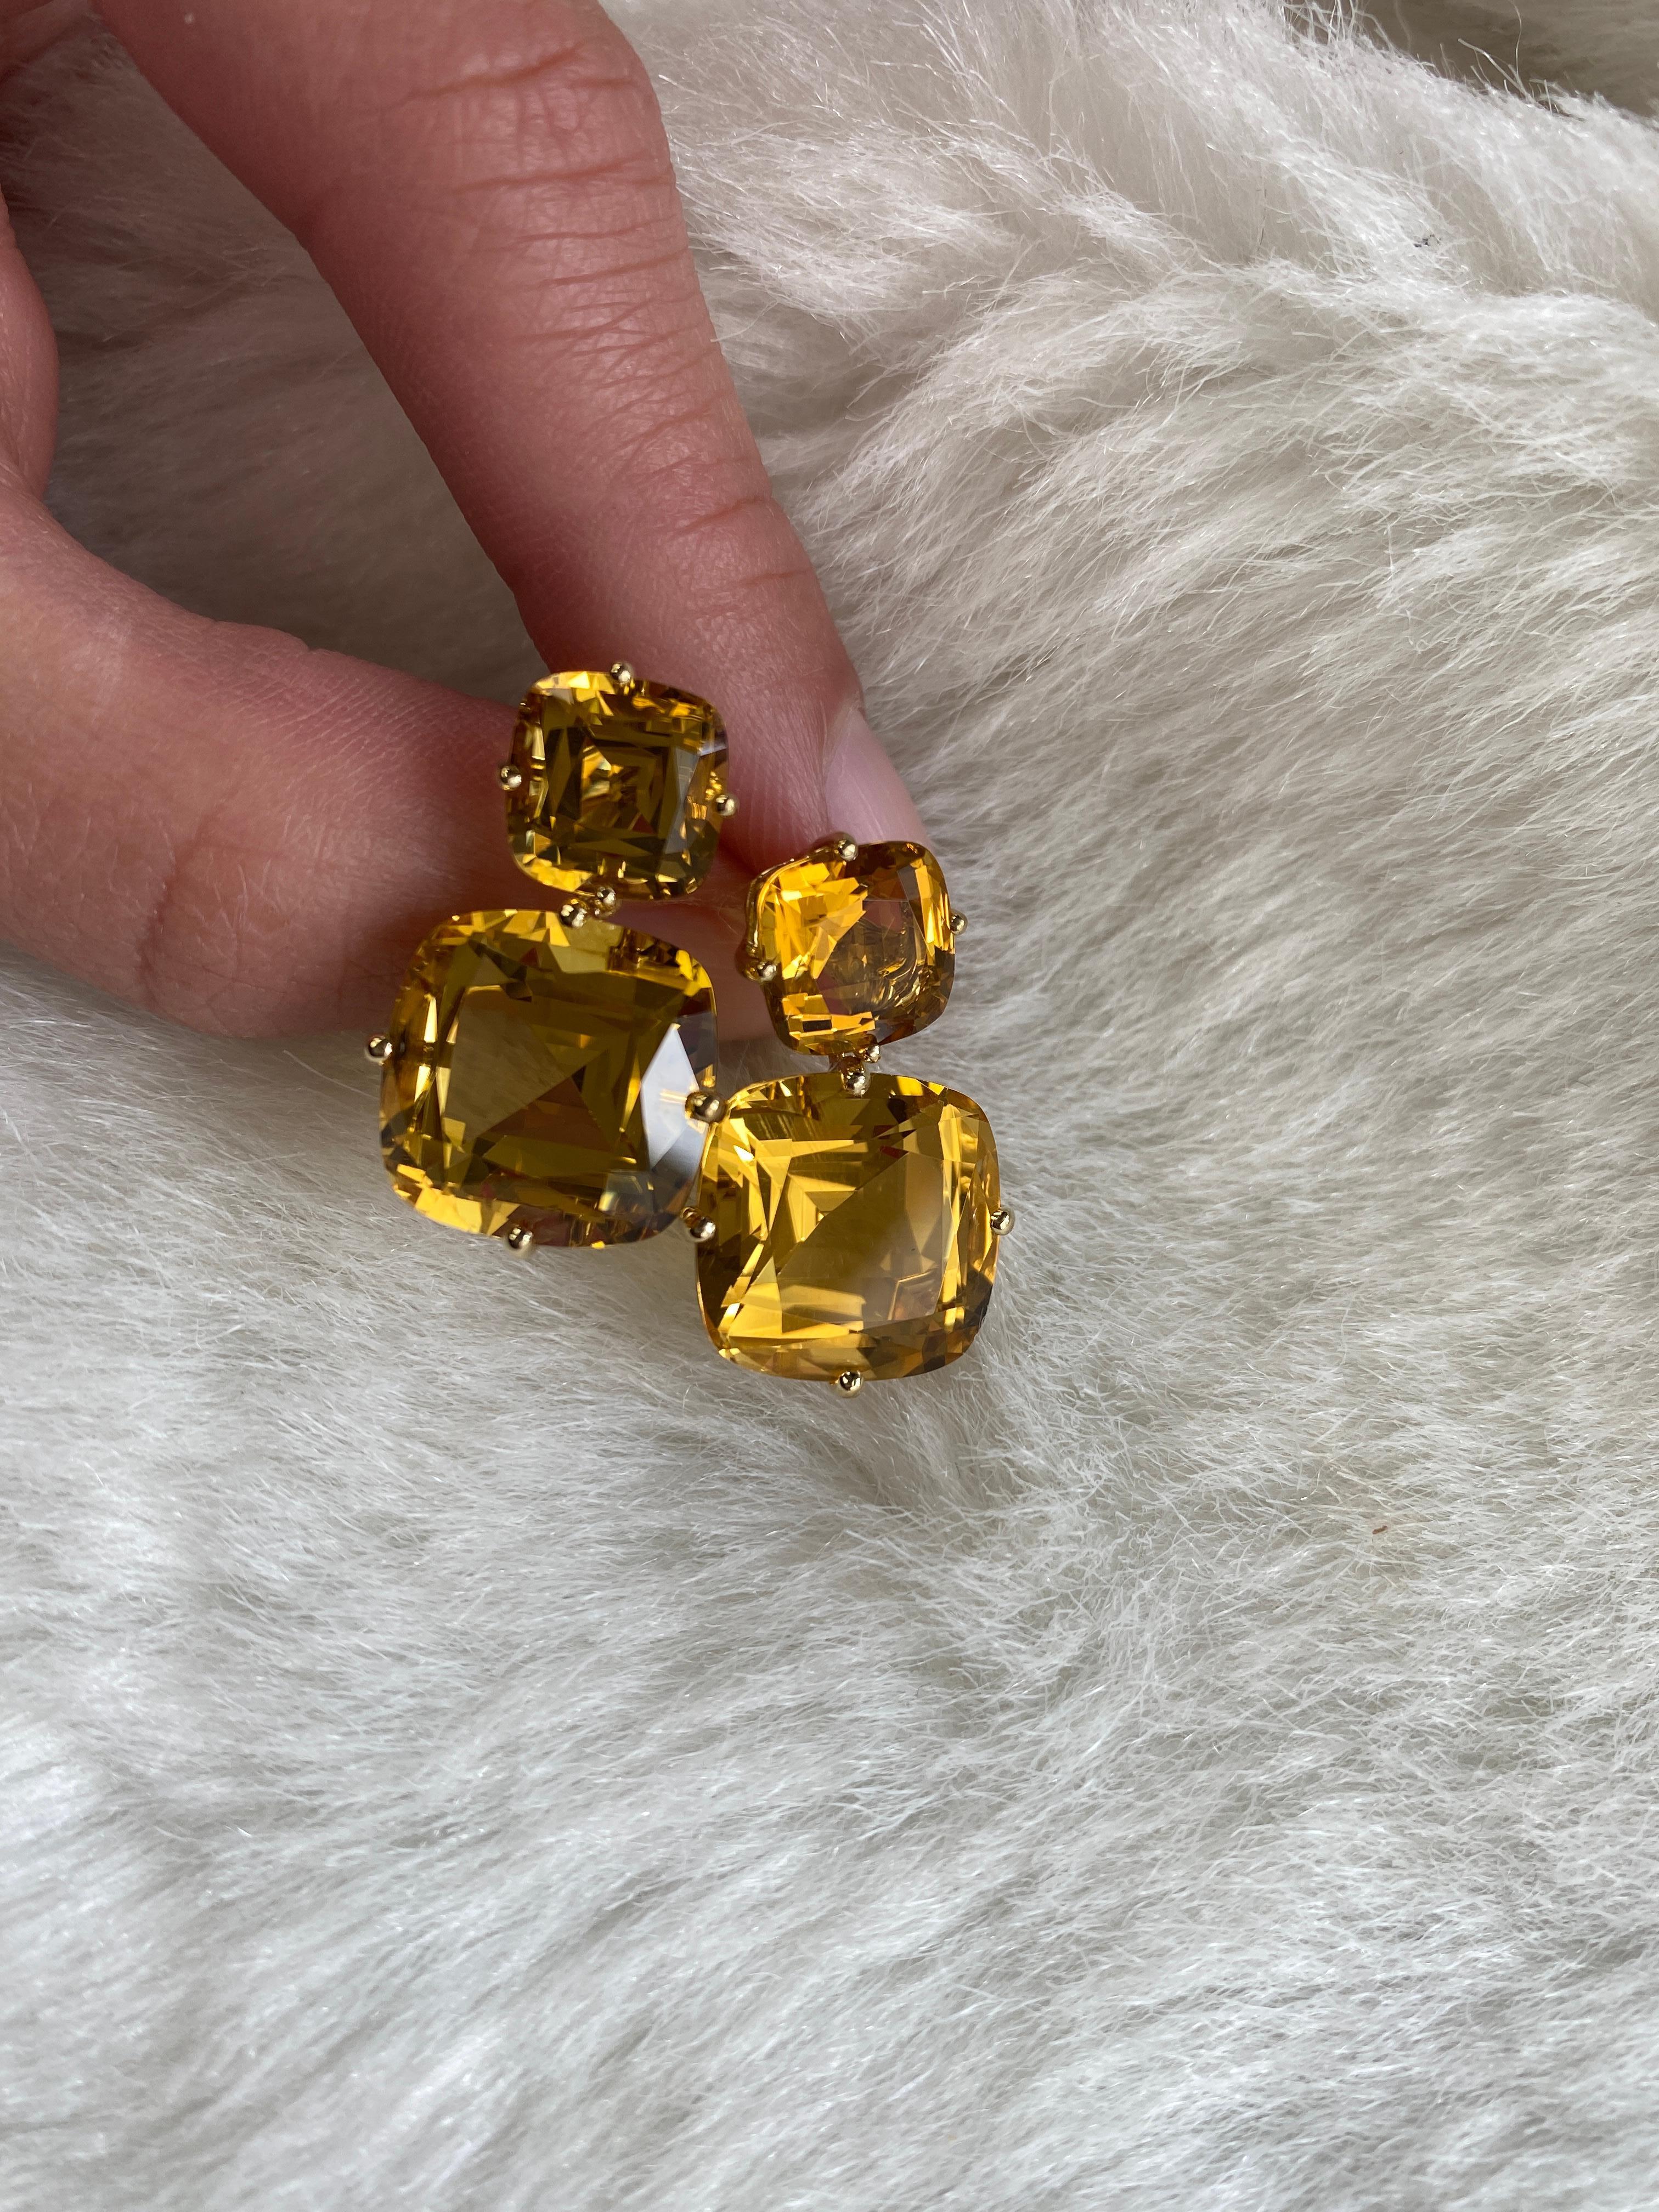 Boucles d'oreilles en or jaune 18 carats avec coussin de citrine à 2 niveaux, de la Collection 'Gossip'. Comme tout bon article de Collectional, cette collection comporte une part de valeur choquante. Ils tiendront tout le monde en haleine pour